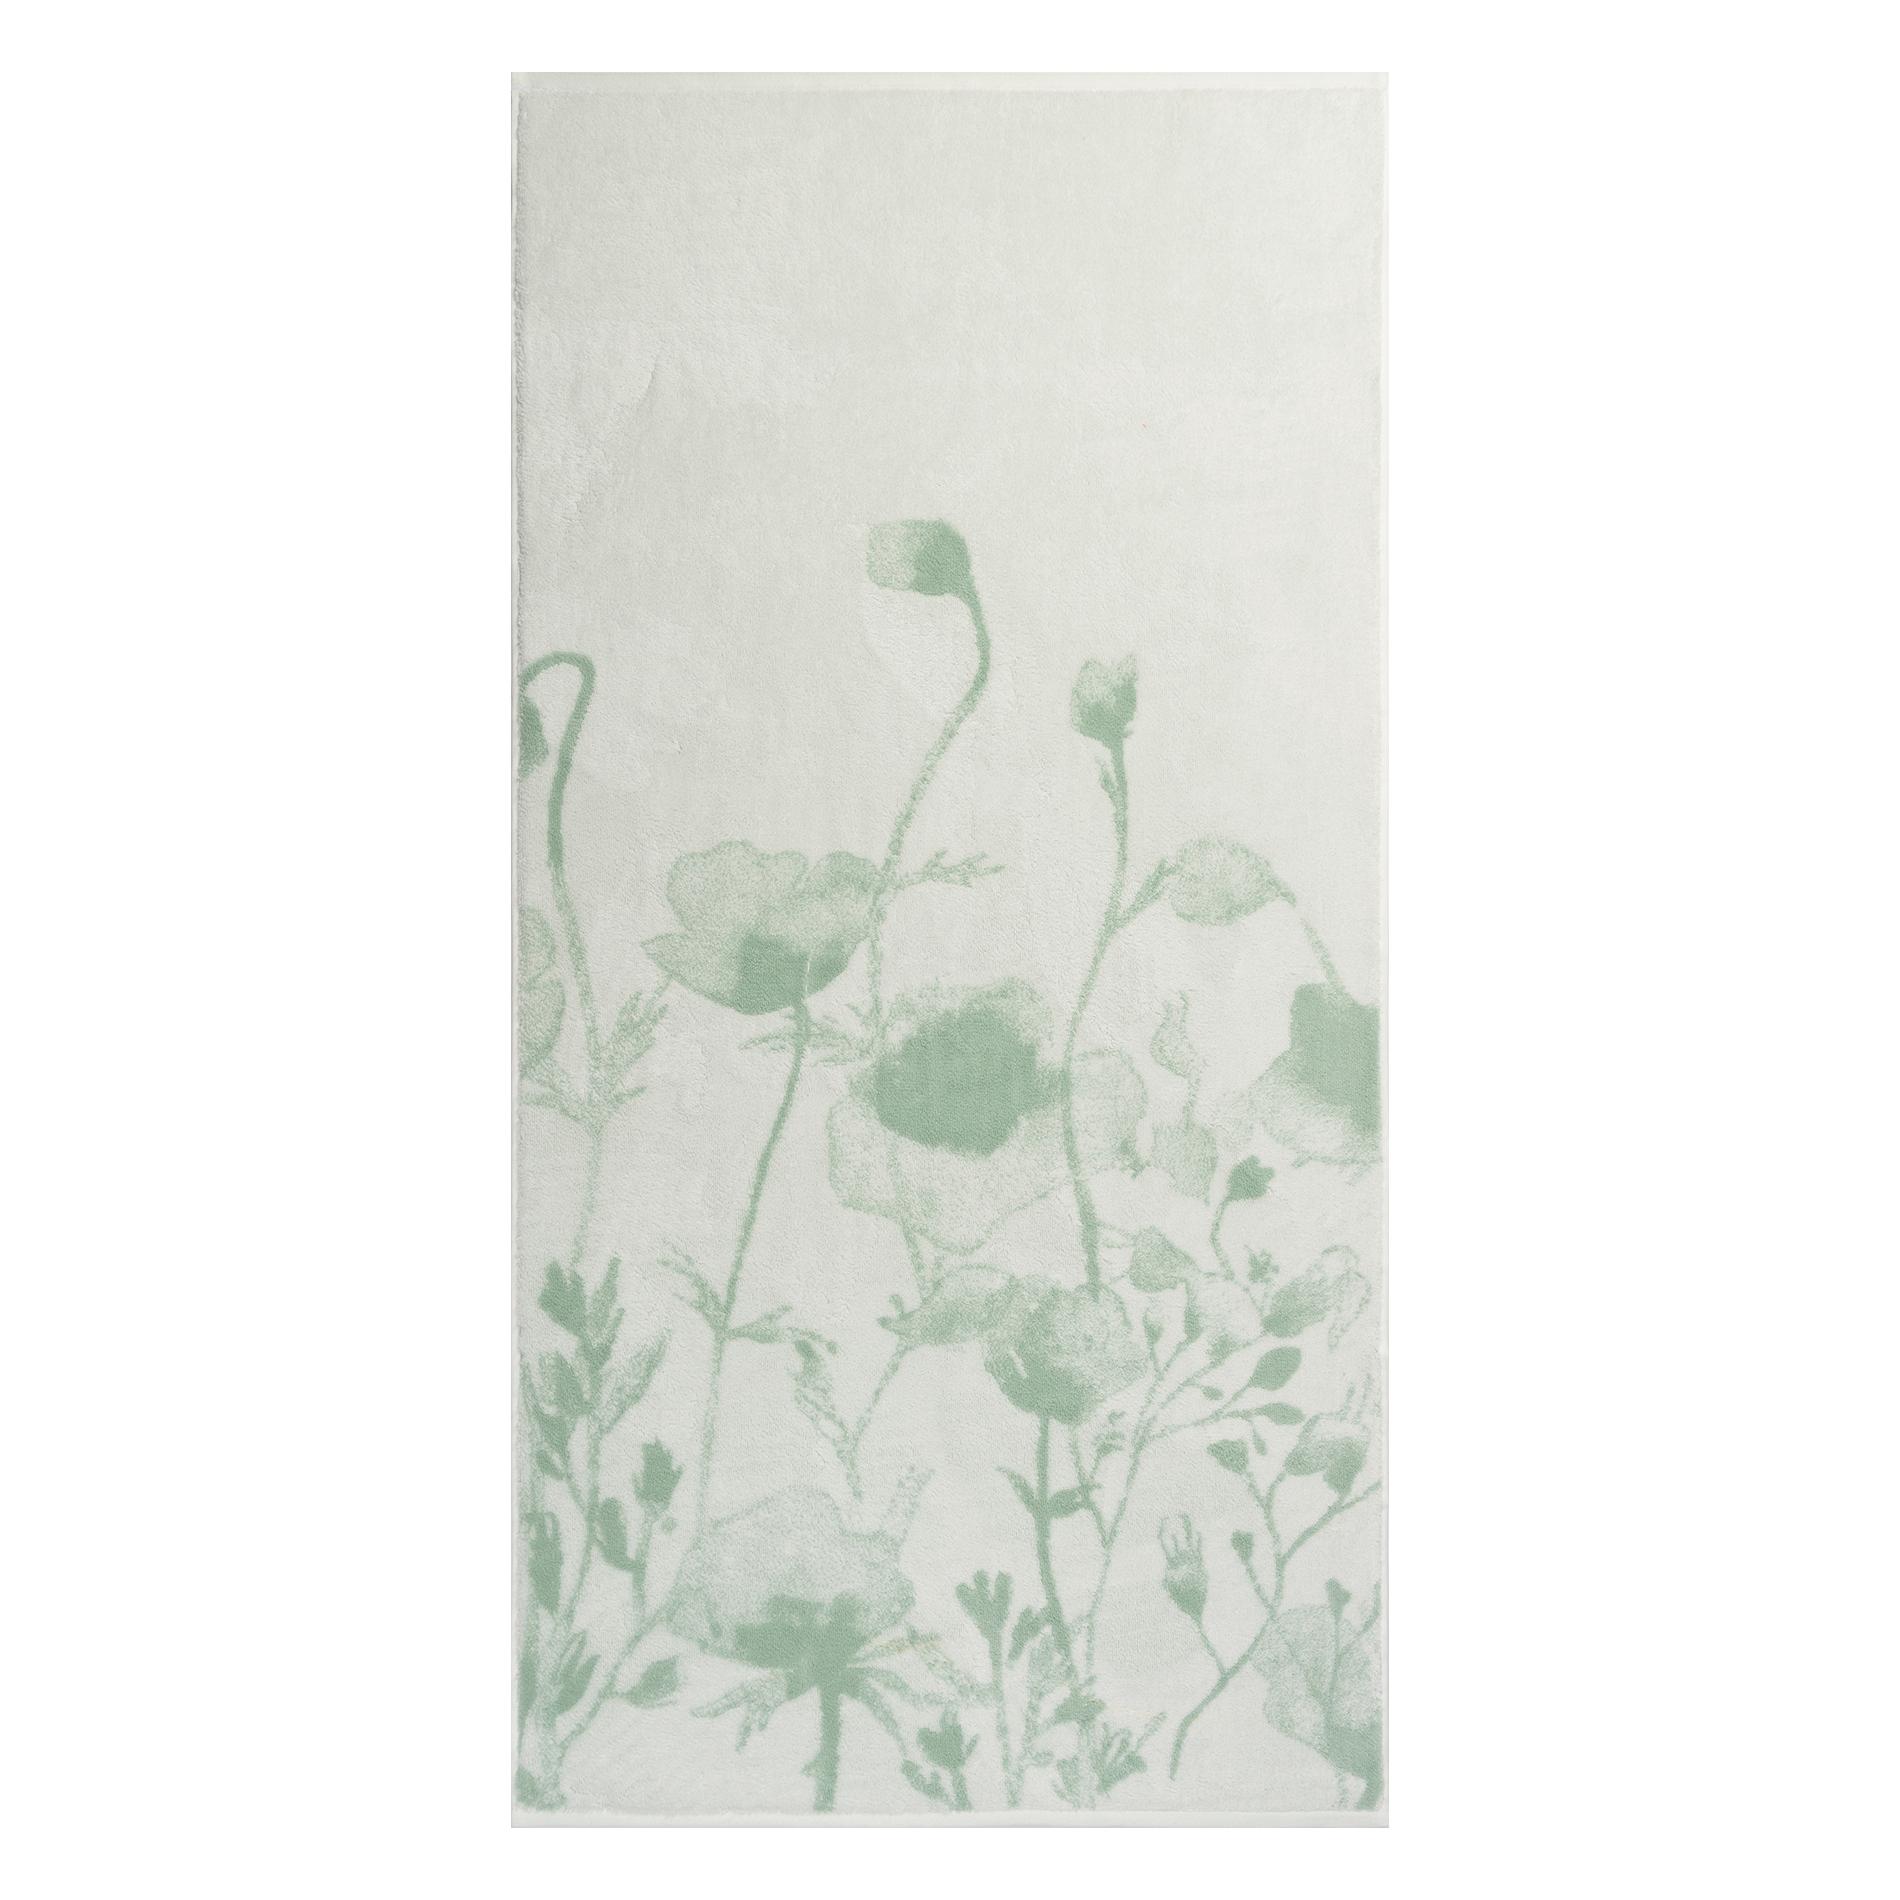 Махровое полотенце Cleanelly Luce verde белое с зеленым 70х140 см полотенце eumenia 70x140 см белое